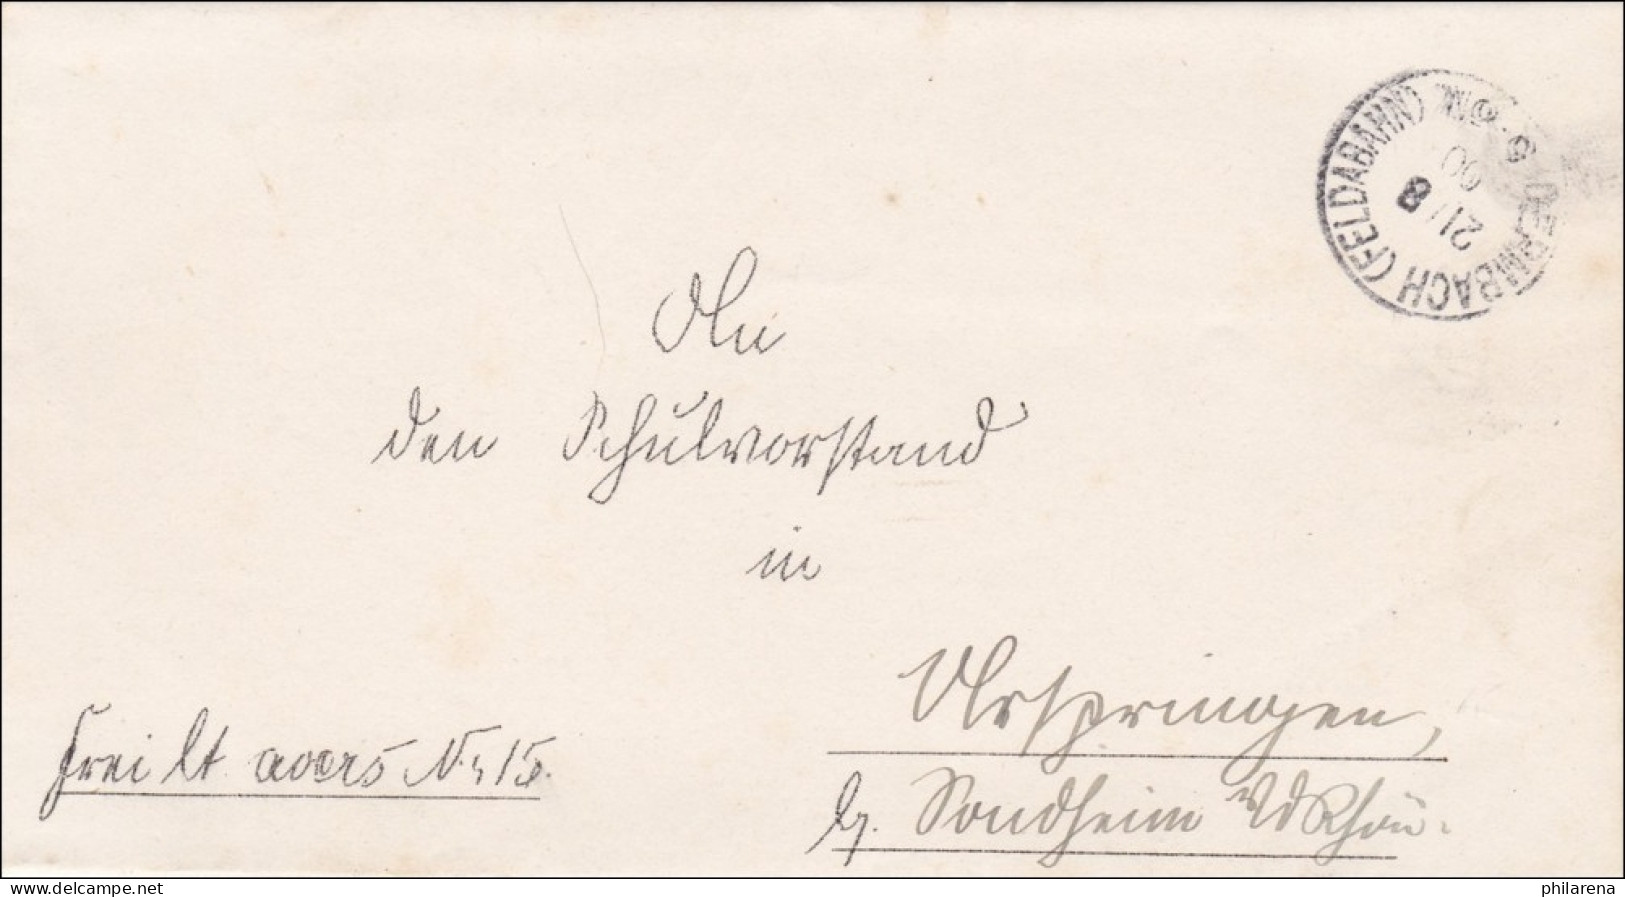 Dermbach/Feldabahn 1900 Nach Ostheim - Lettres & Documents